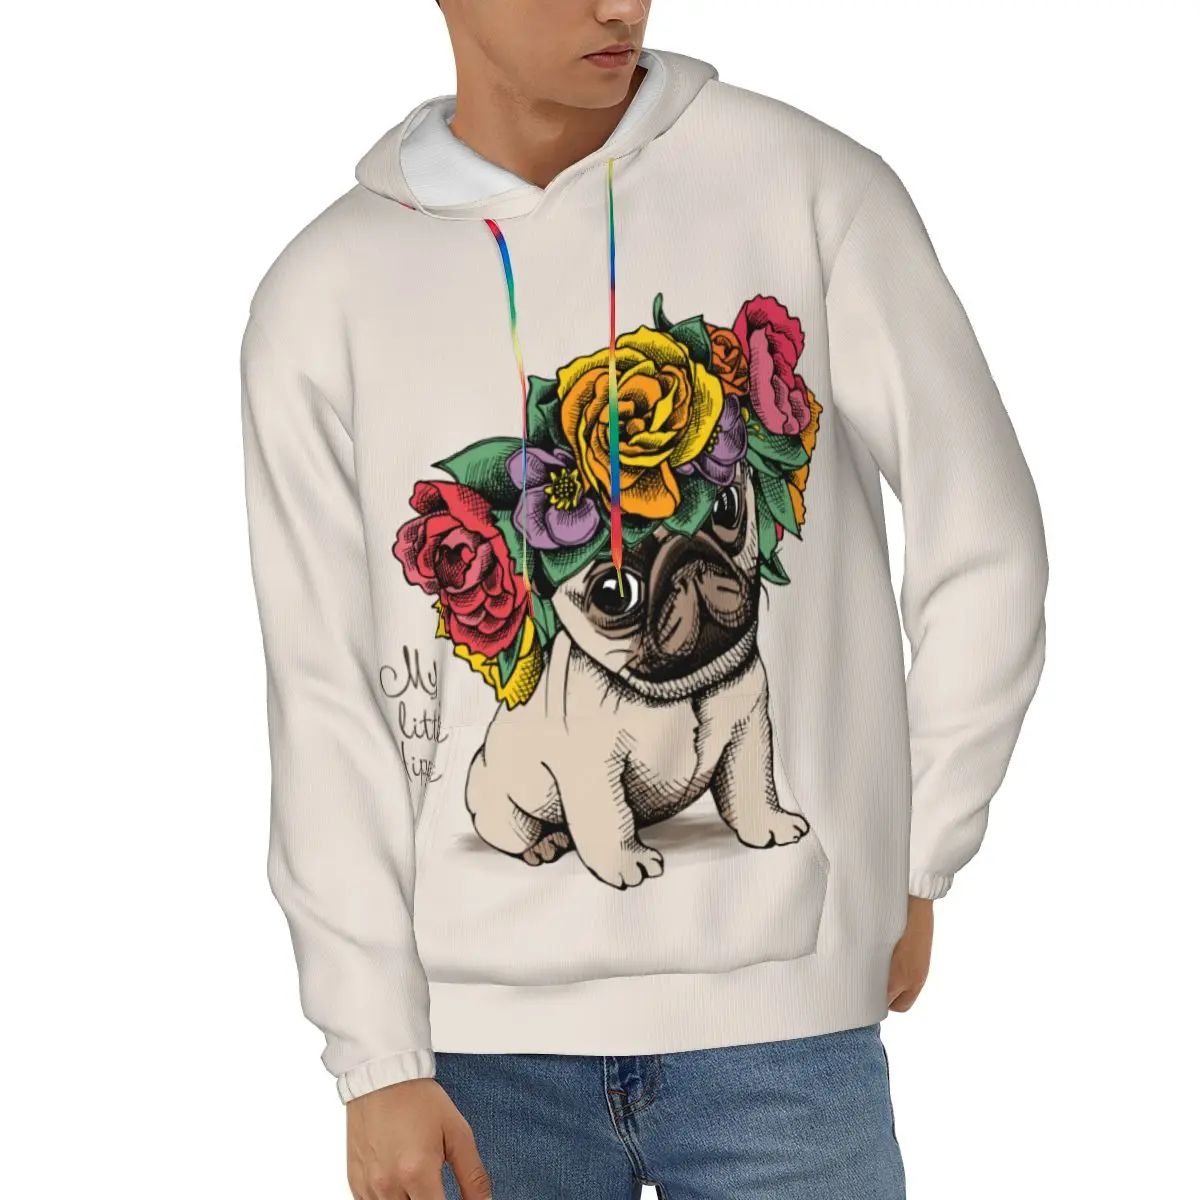 

Pug Dog In Flower Crown Men's Hoodies Autumn Winter Hooded Sweatshirt Hoodie Hip Hop Pullover Hoody